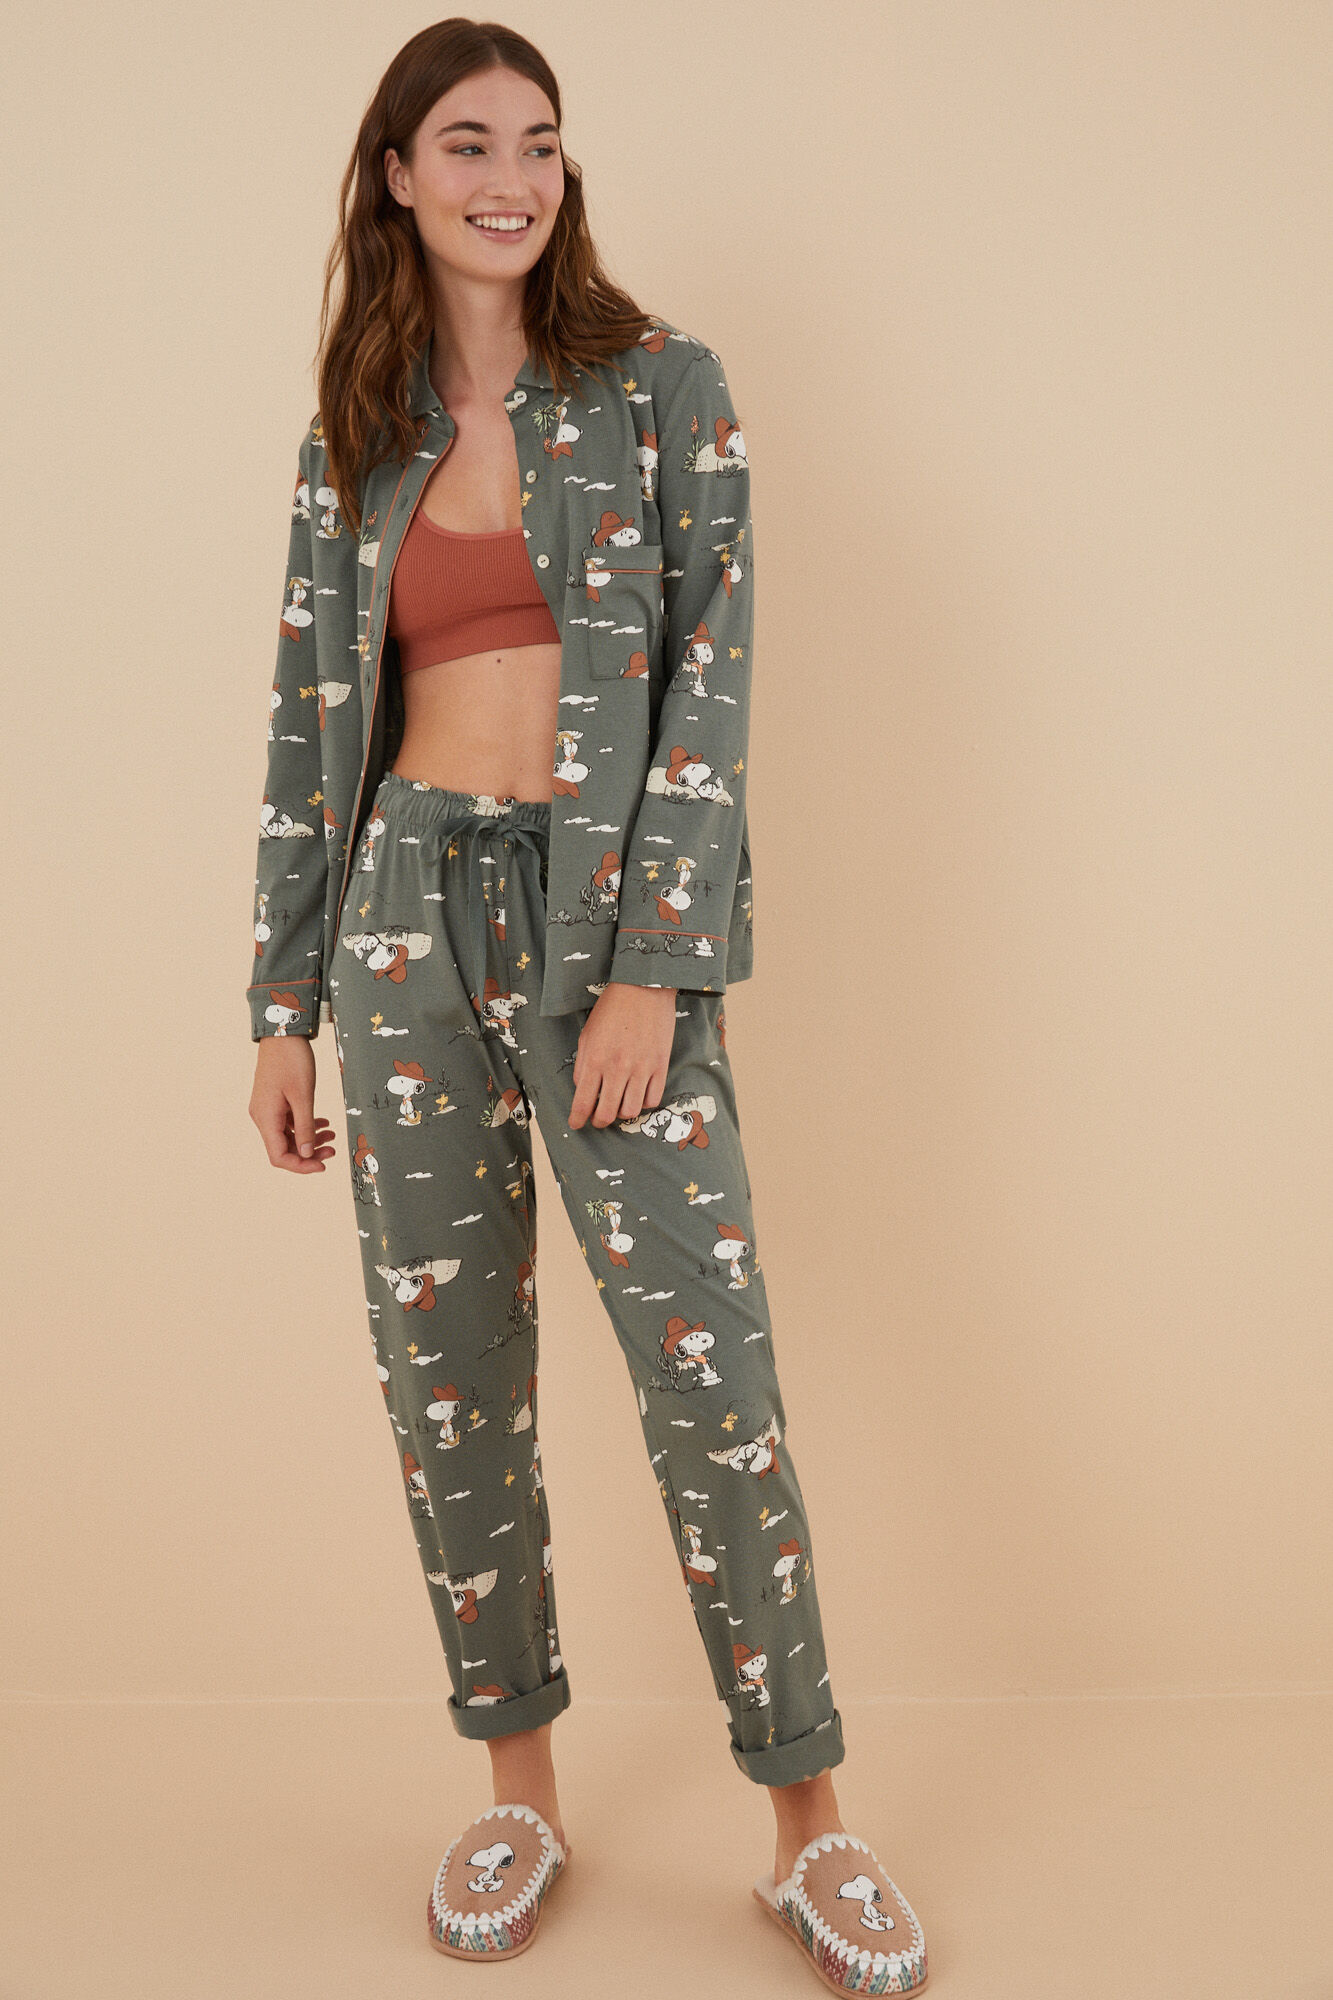 Pijama camisero 100% algodón Snoopy verde | Ropa de dormir de mujer y homewear | WomenSecret